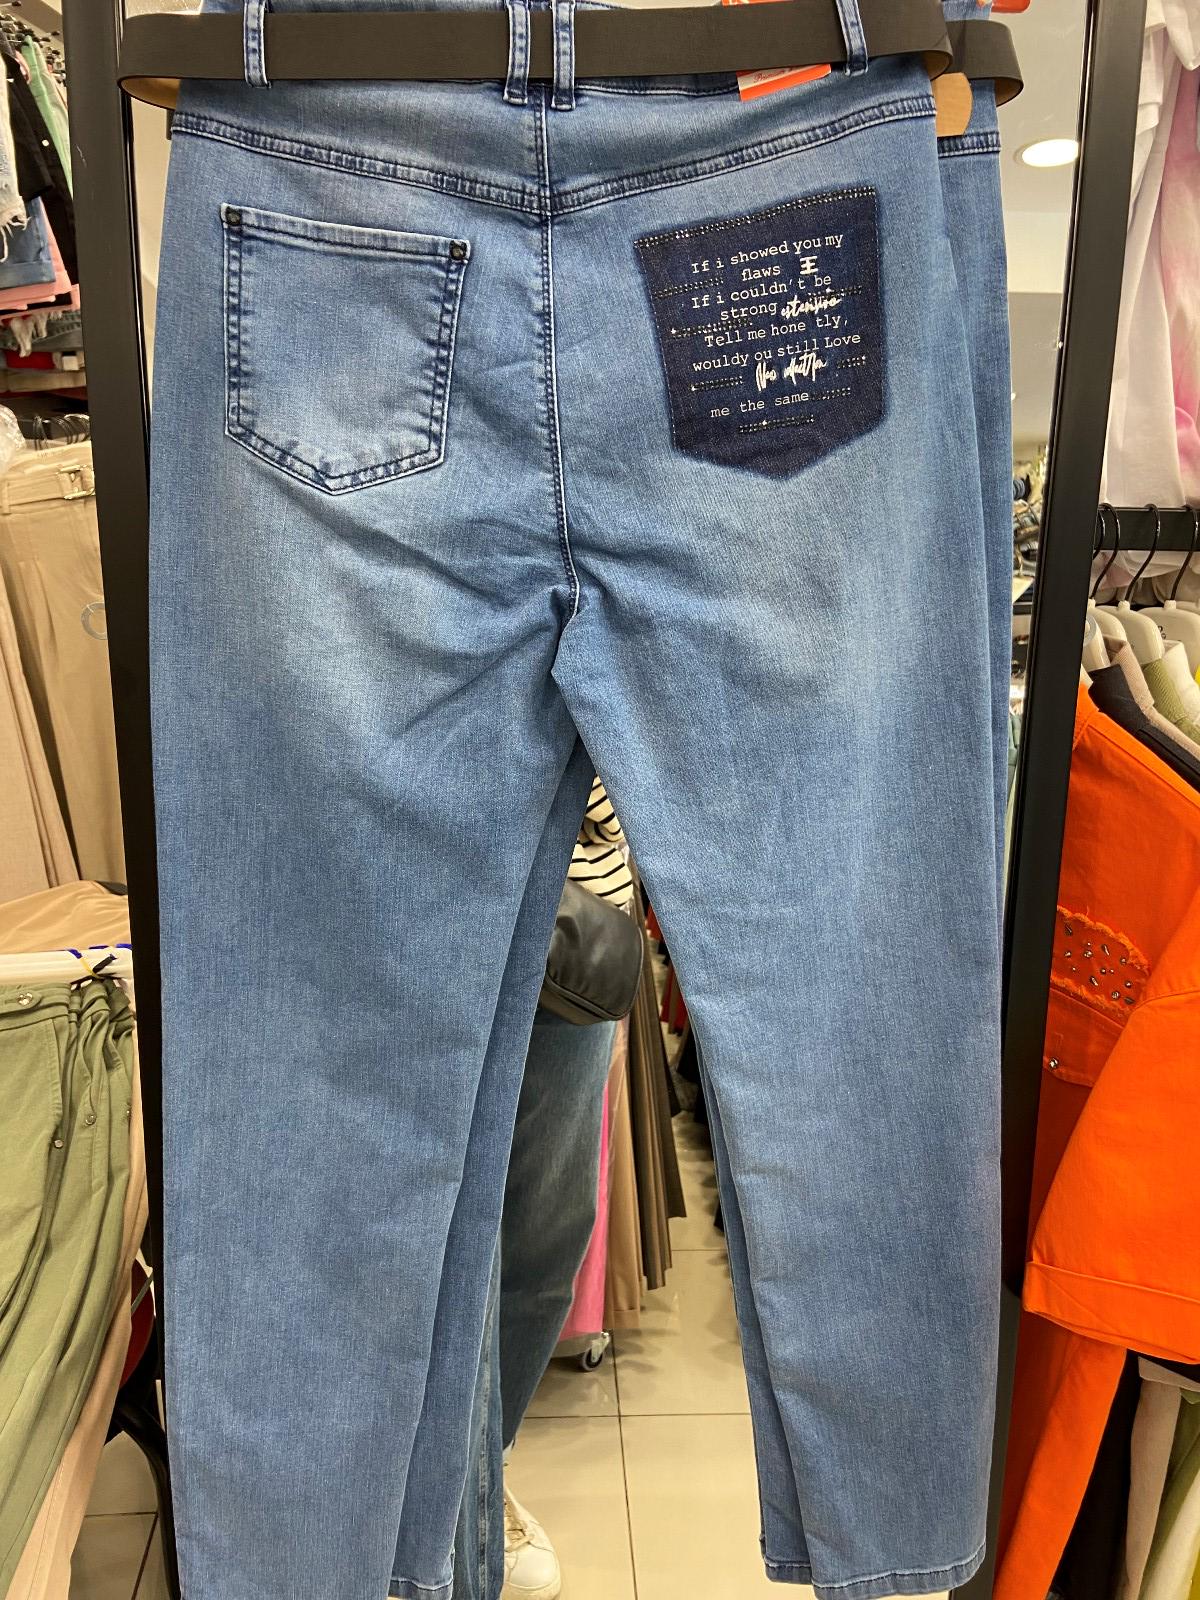 Plus Size Jeans